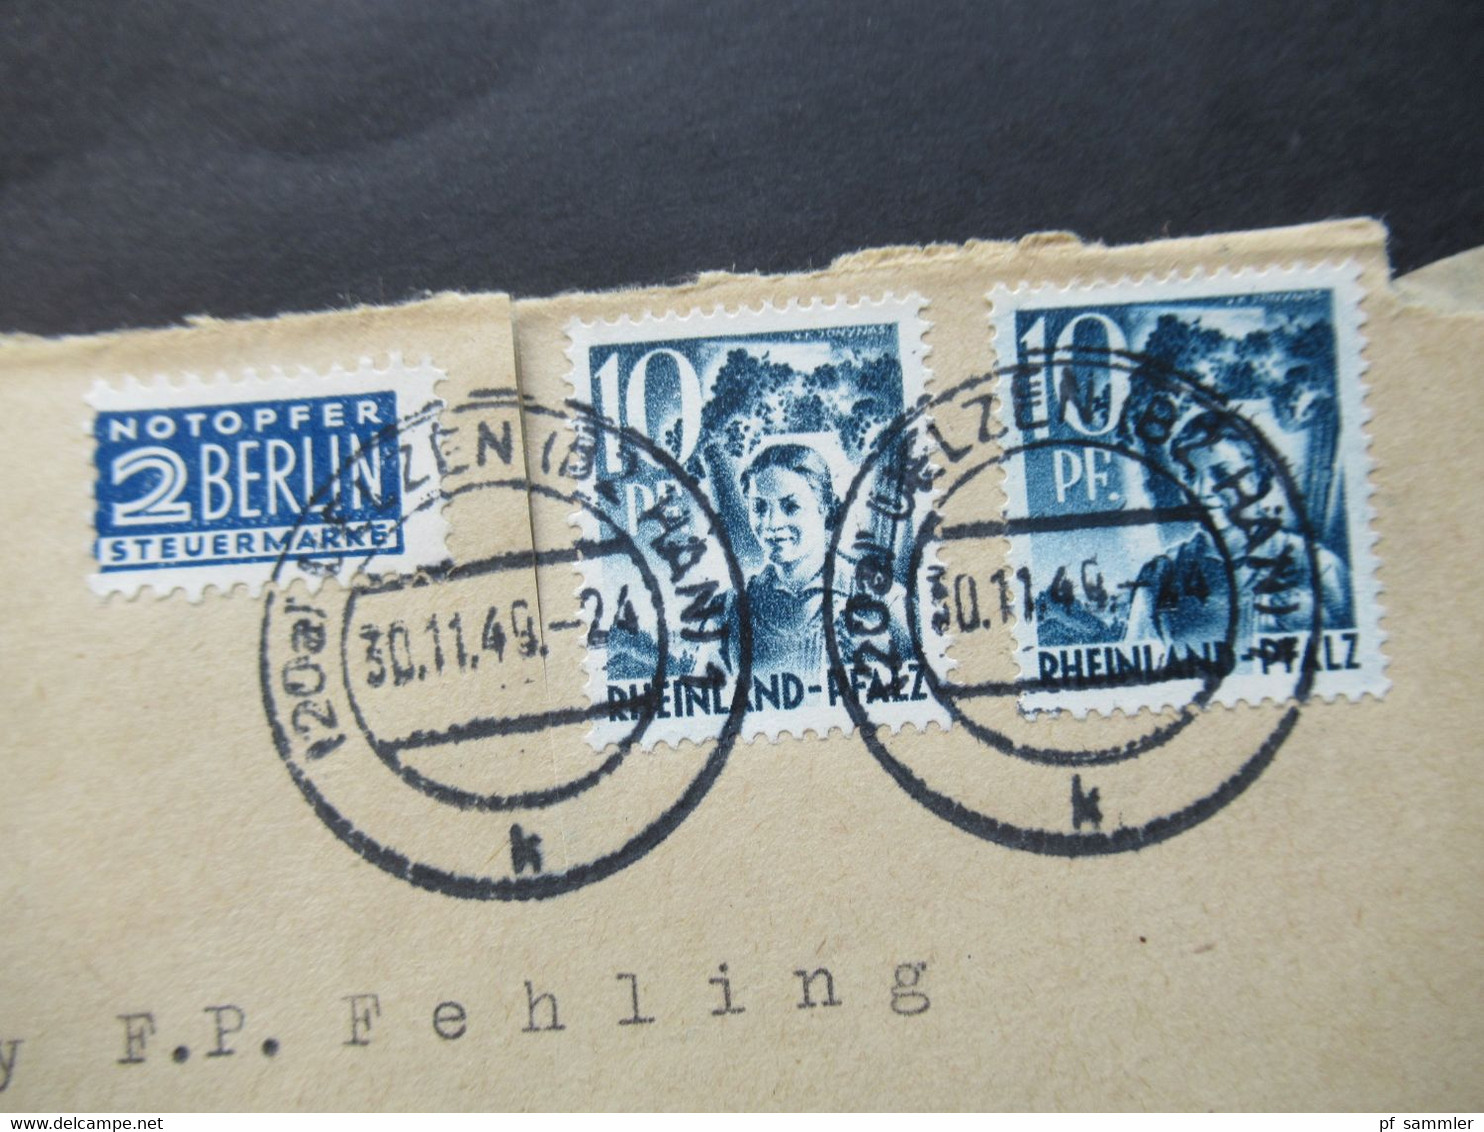 Französische Zone Rheinland Pfalz Nr.3 MeF  30.11.1949 Mit Notopfer Marke Umschlag Saatgut Heinr. Gerke Uelzen Hannover - Renania-Palatinado